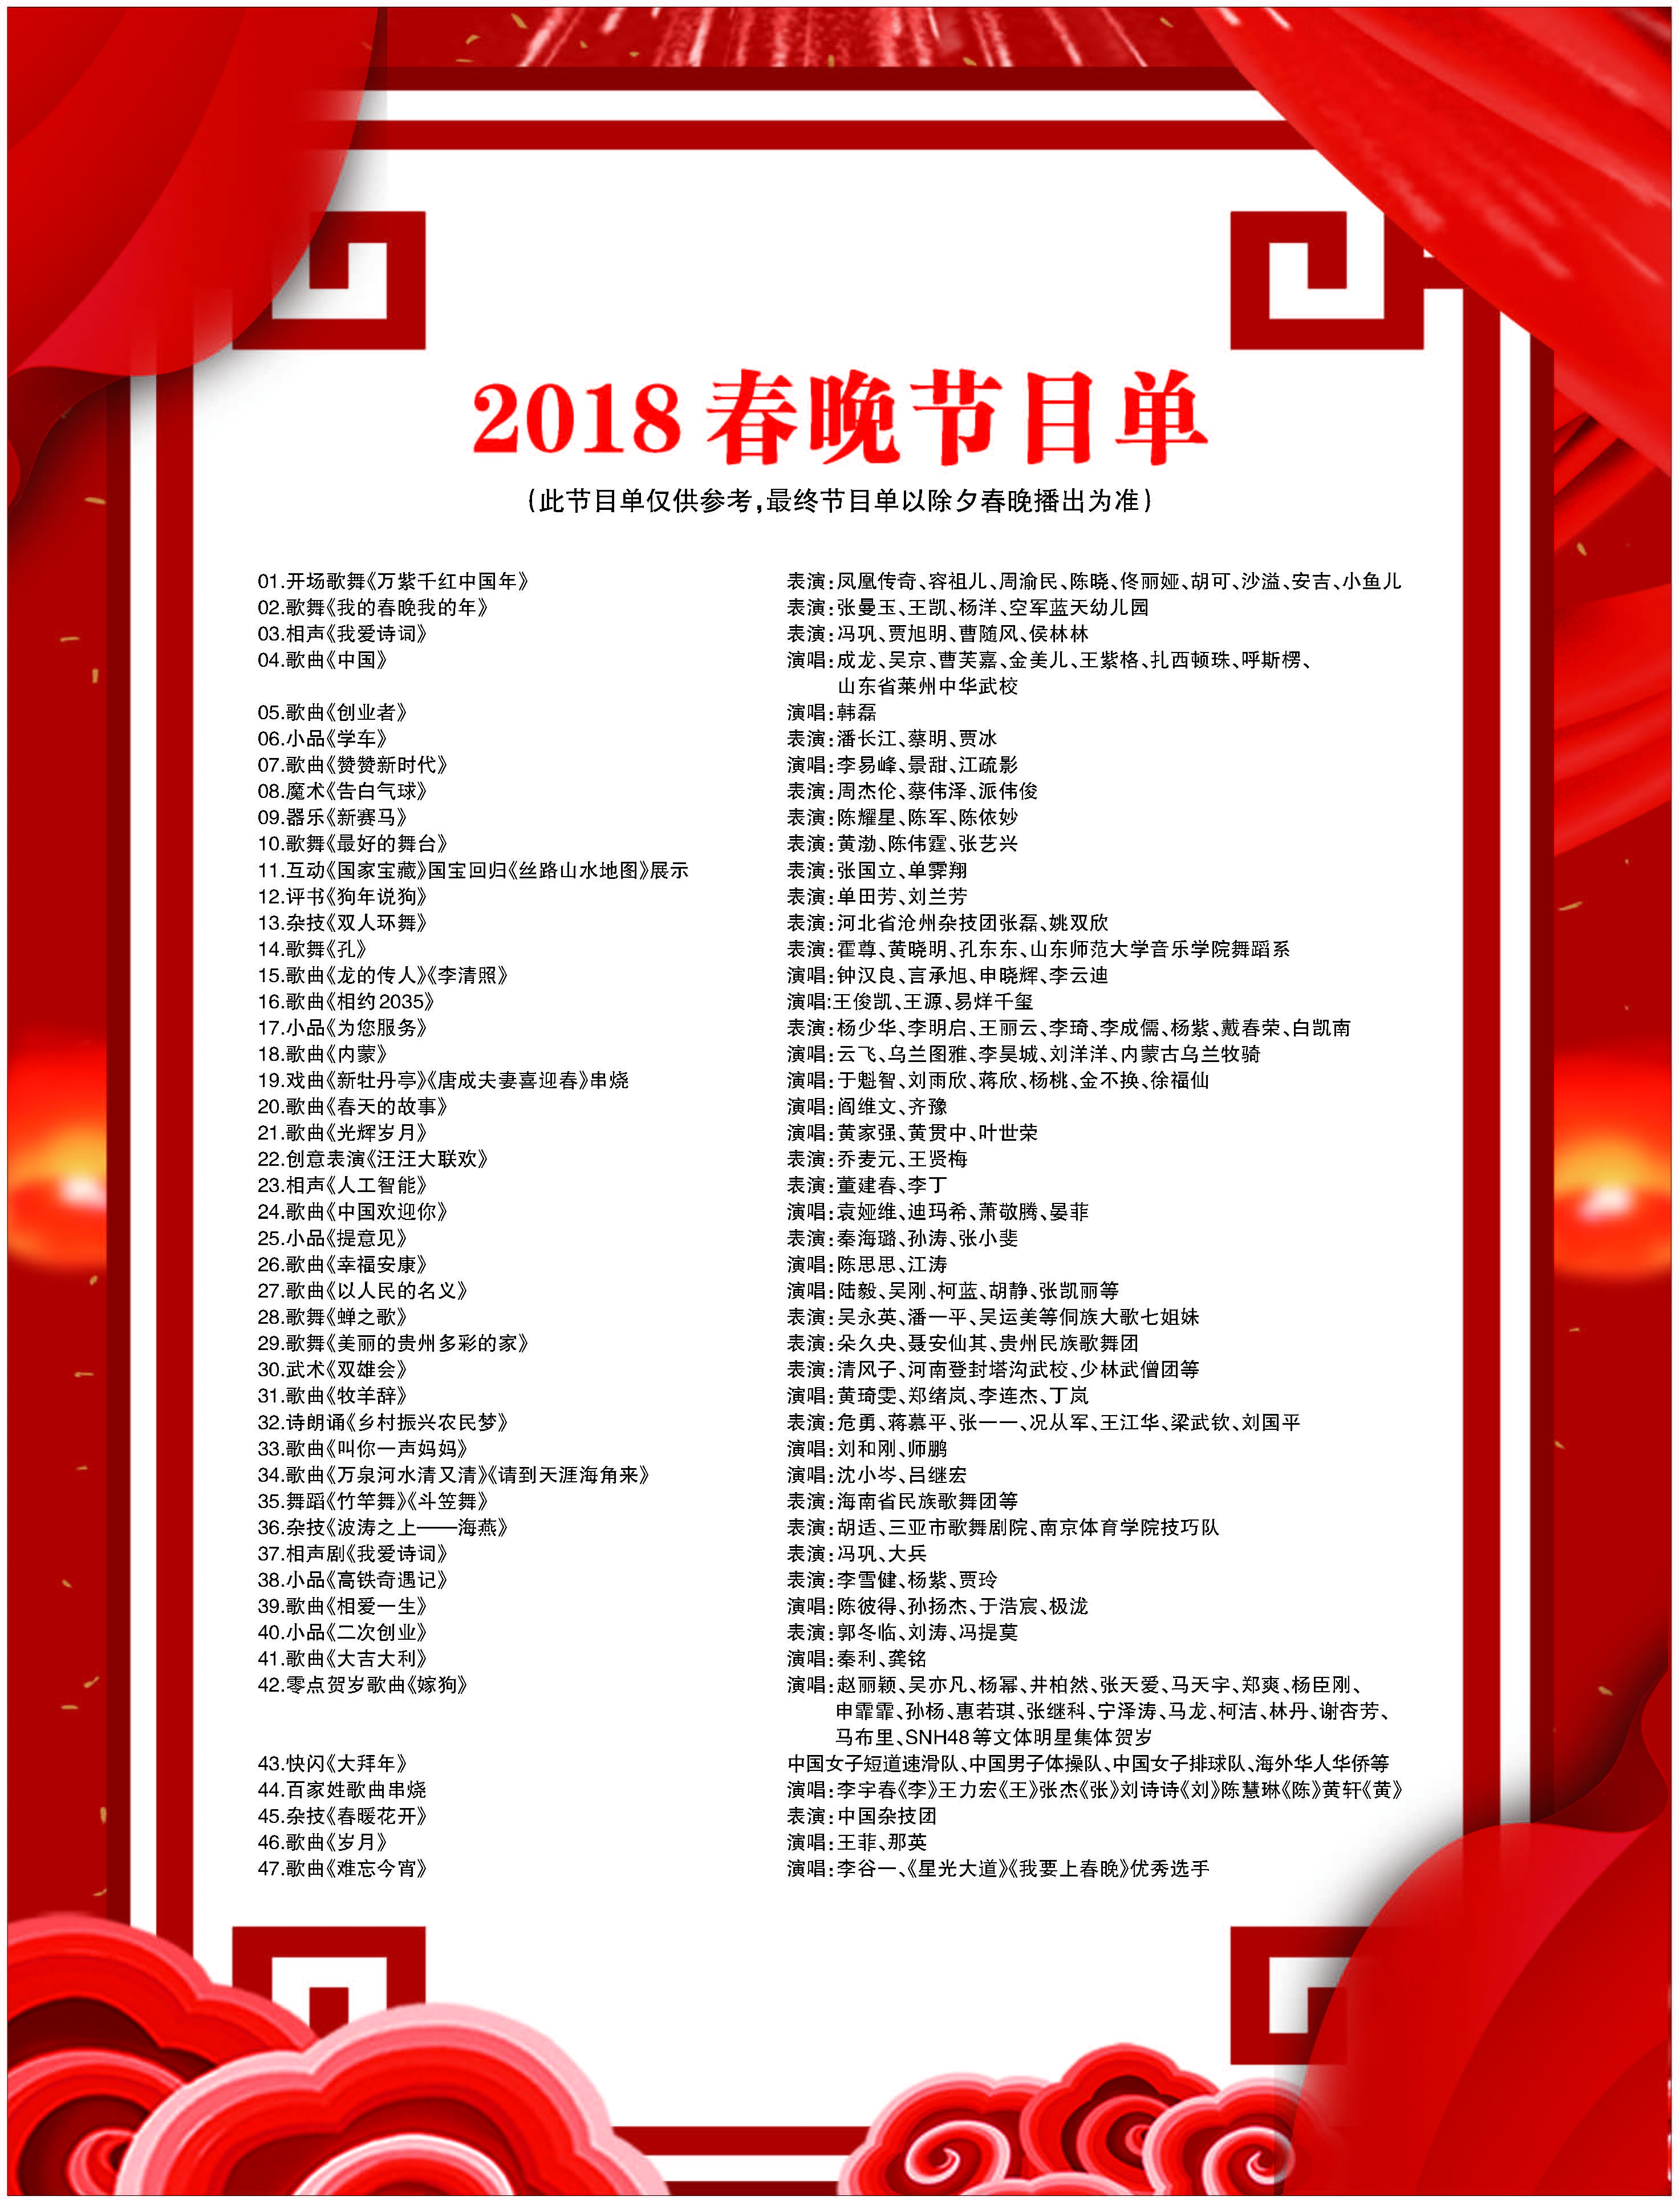 2014央视春晚节目单表图片